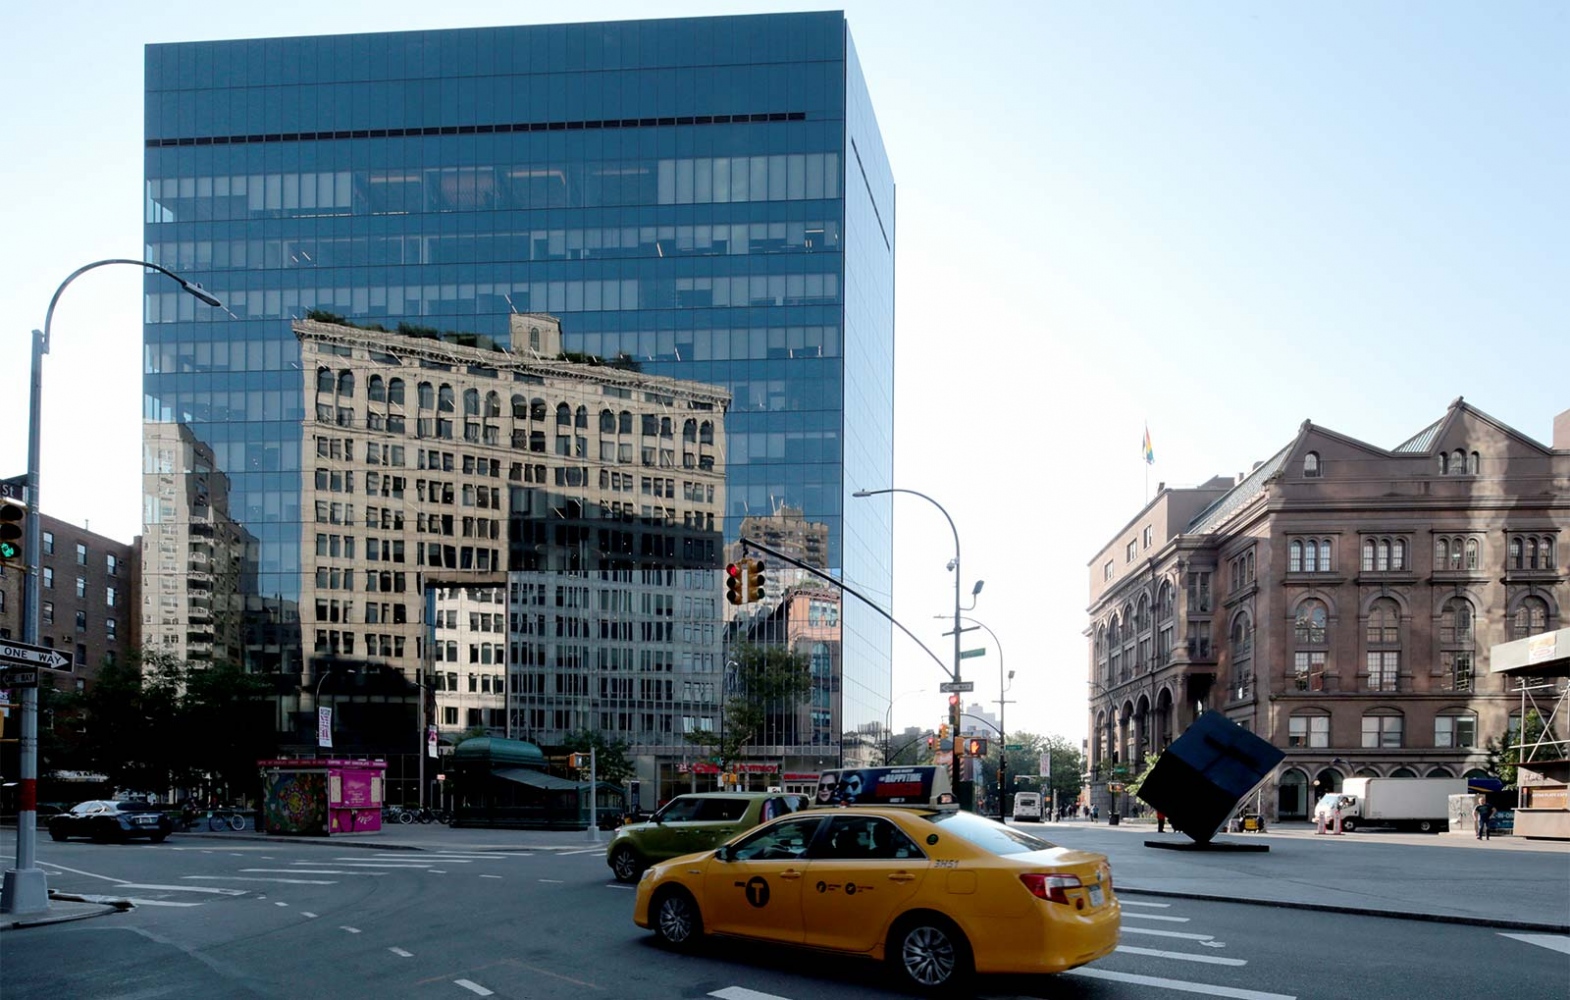 Architecture - Cooper Square - New York